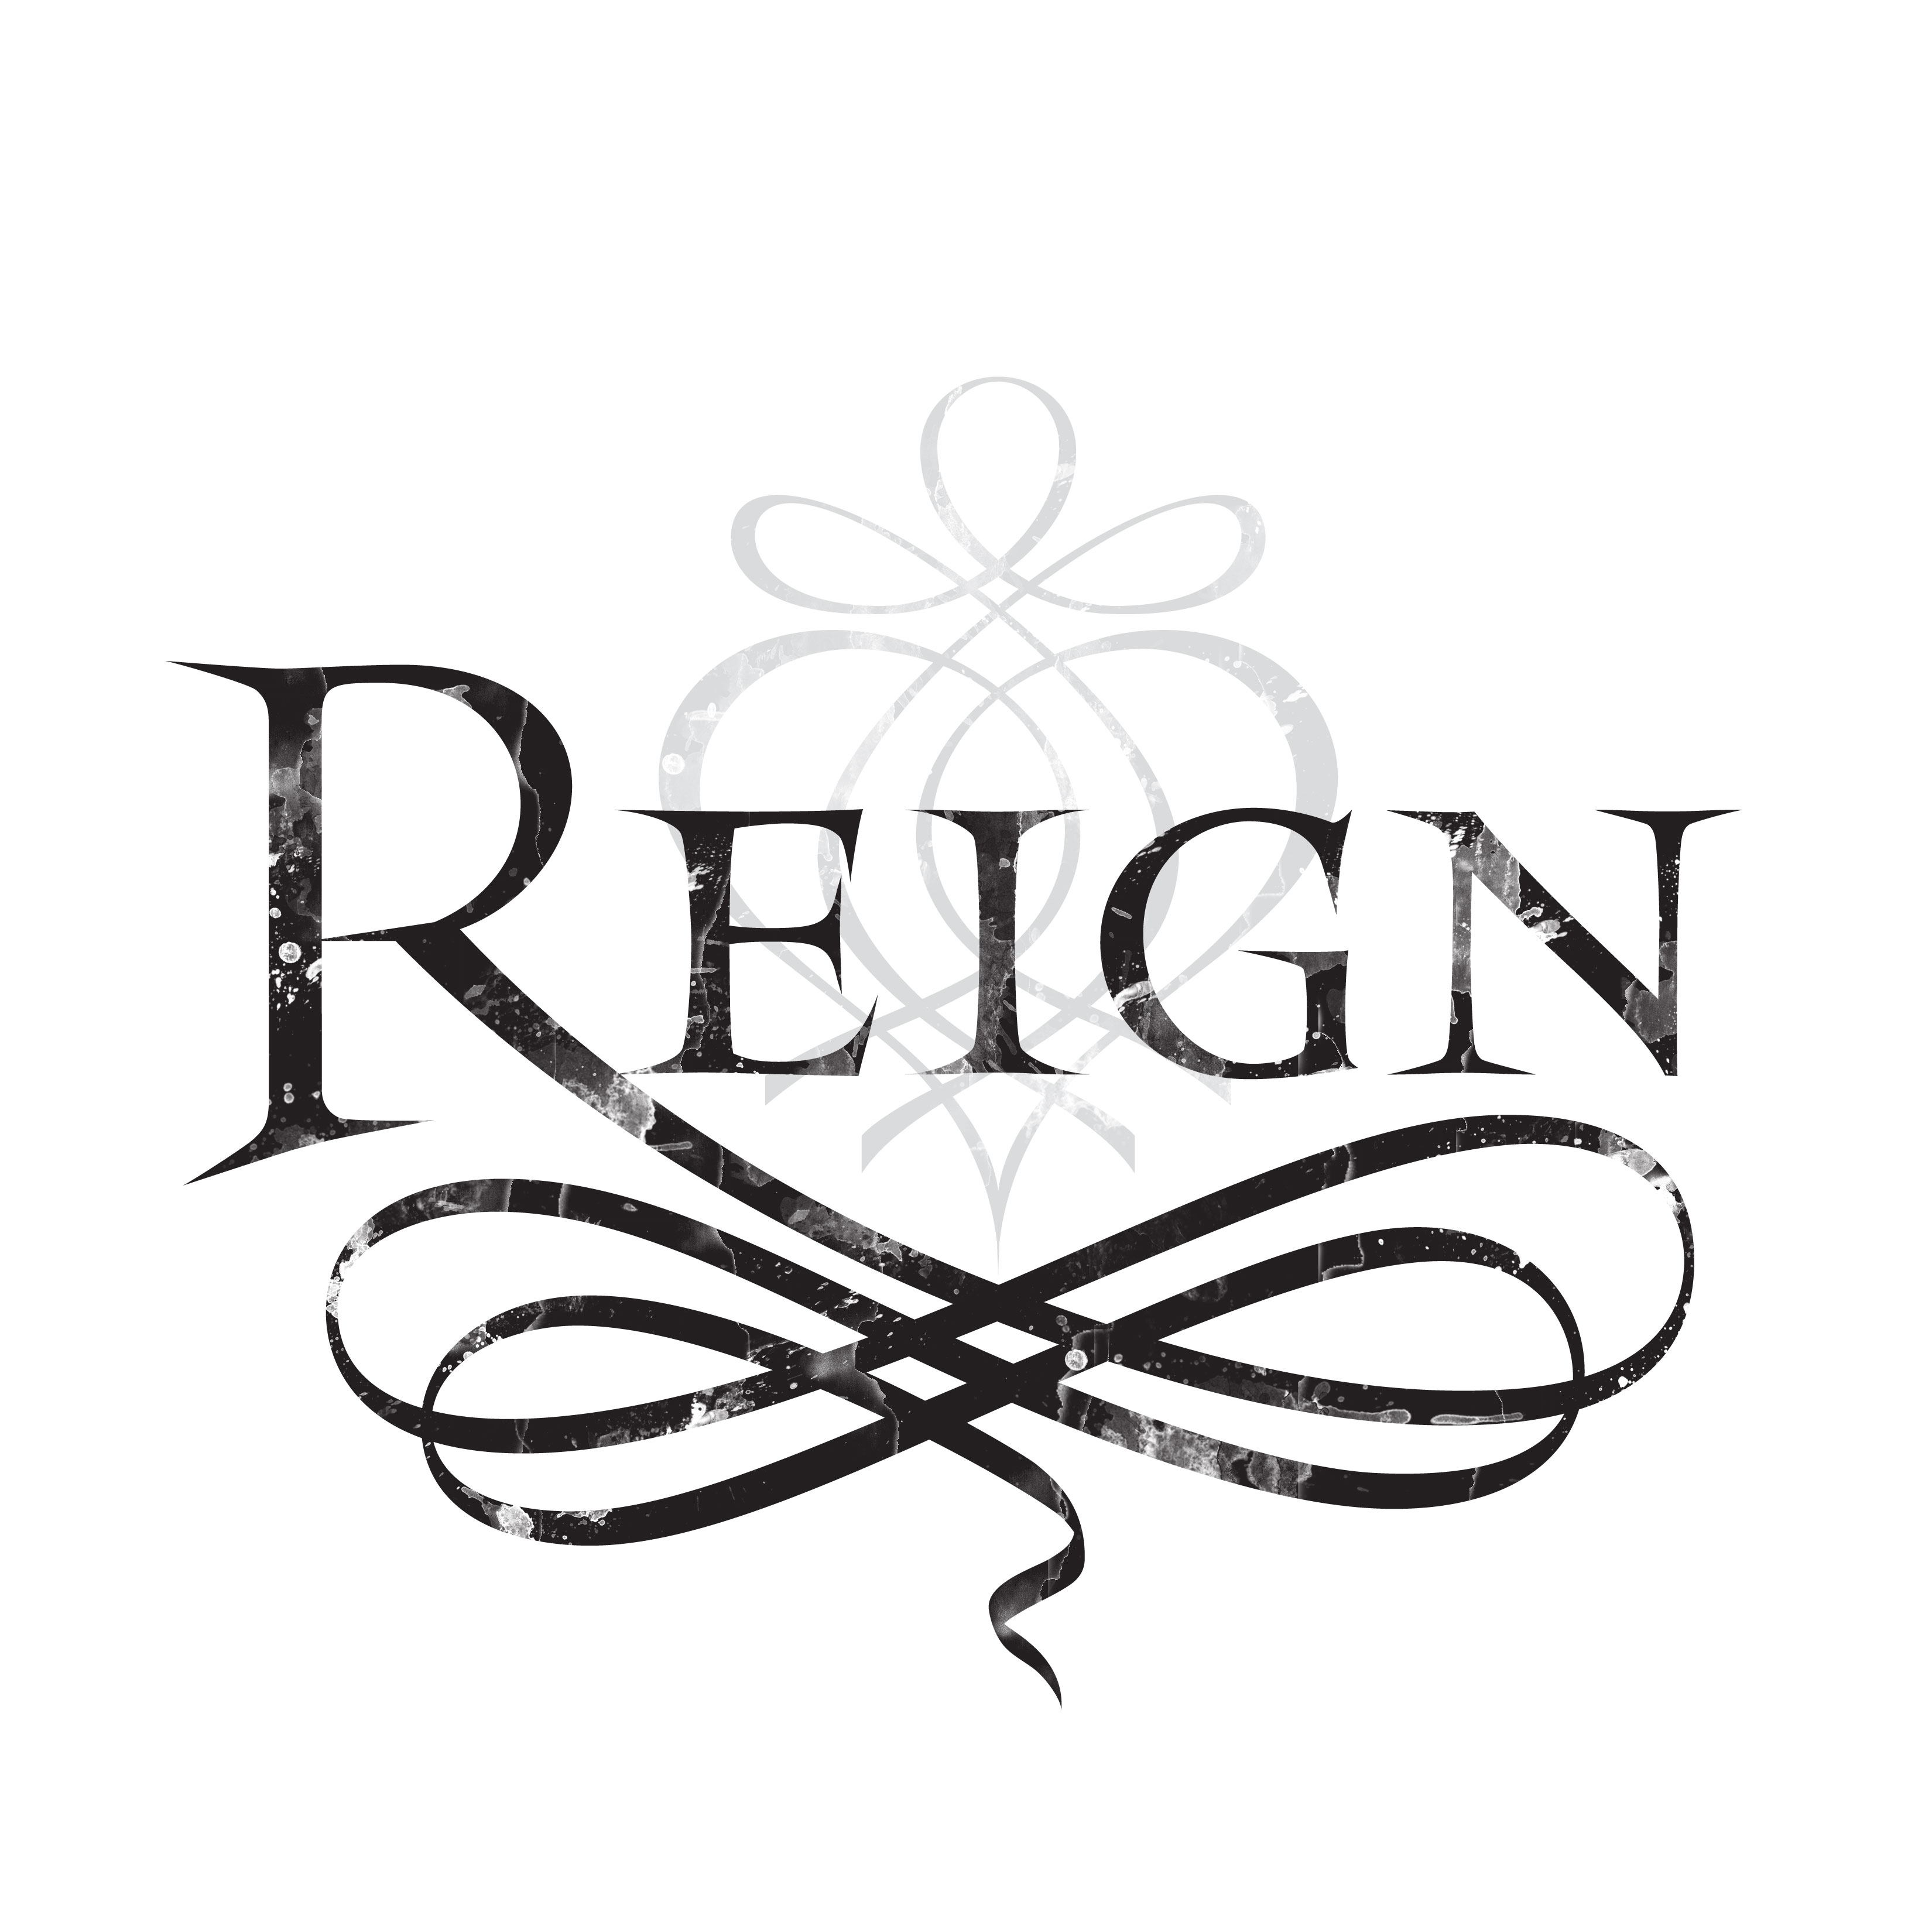 Reign Logo